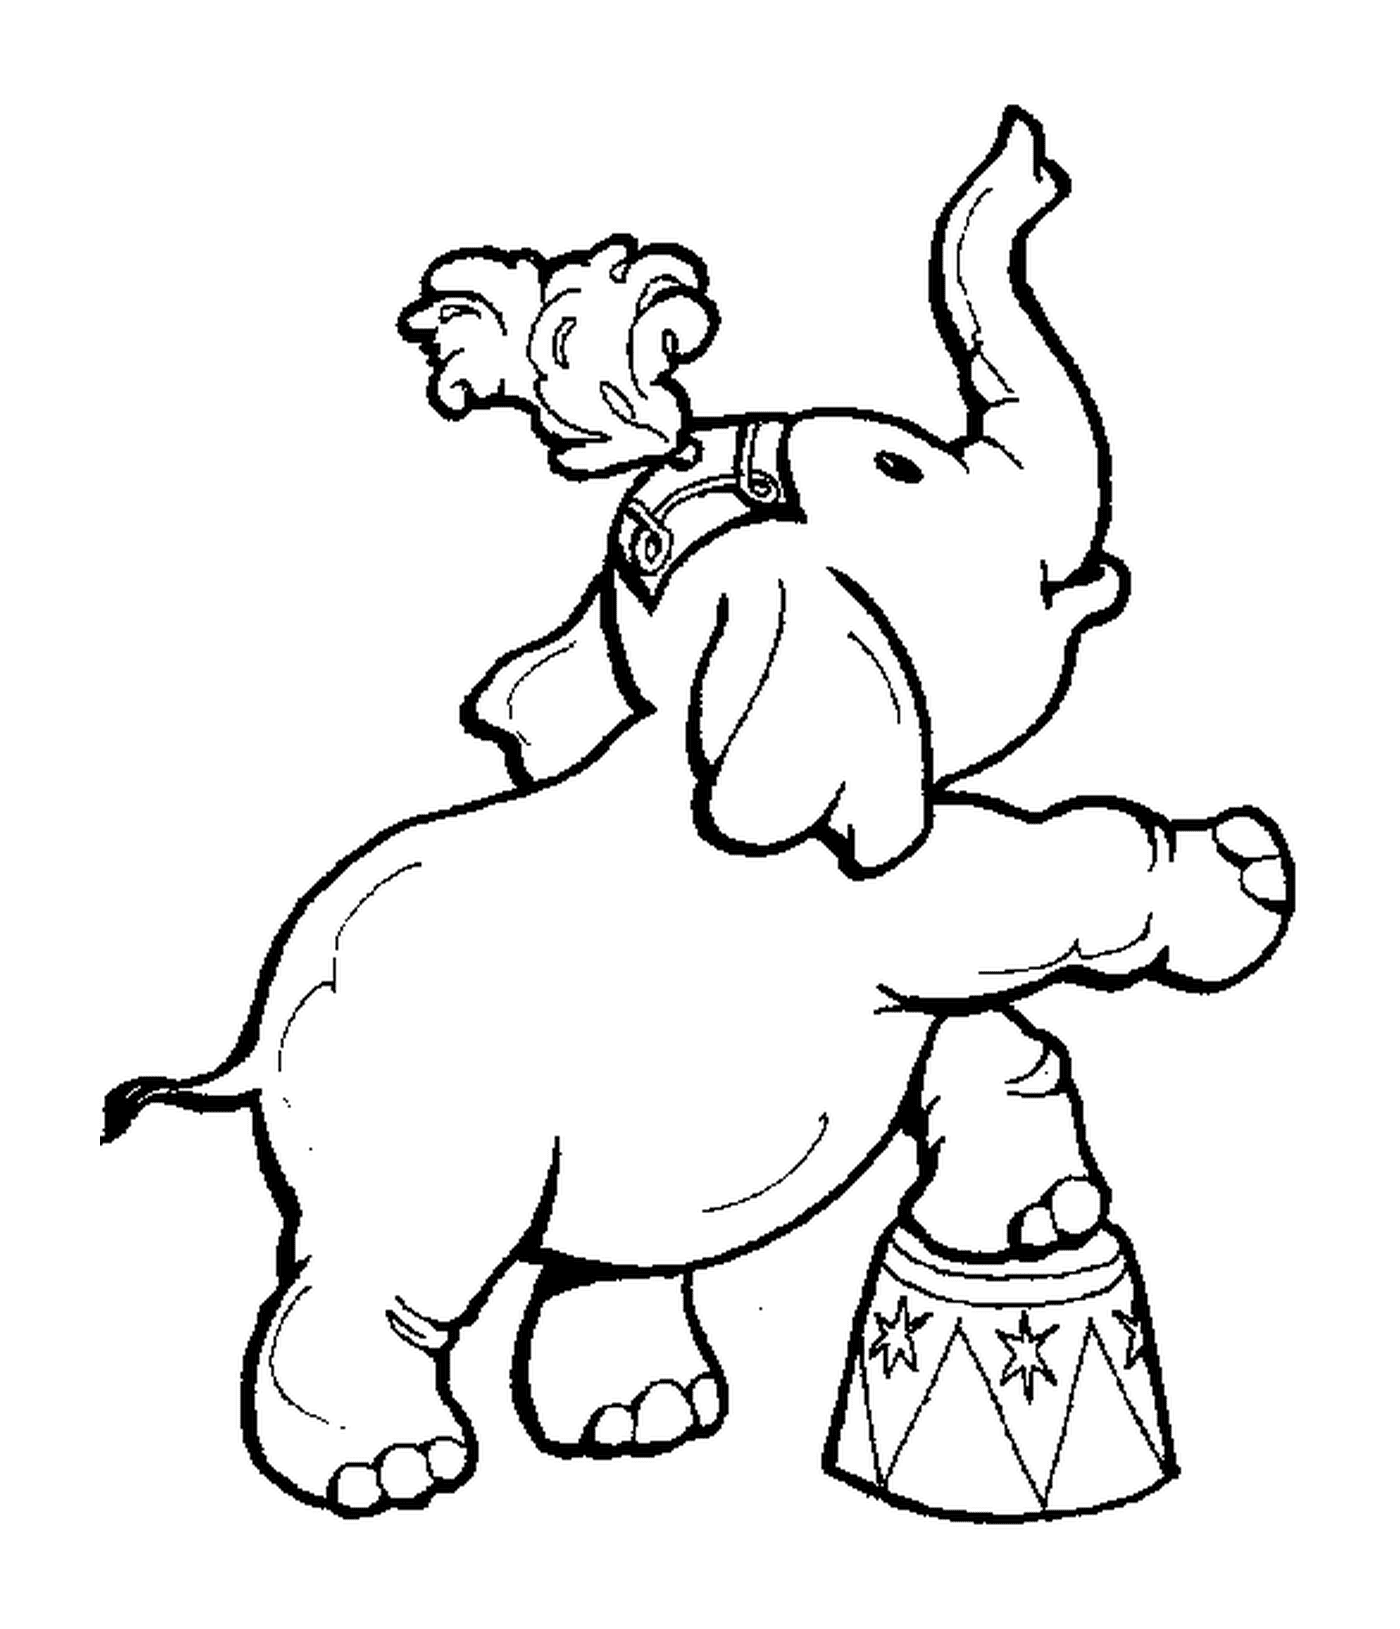  大象站在鼓鼓上 